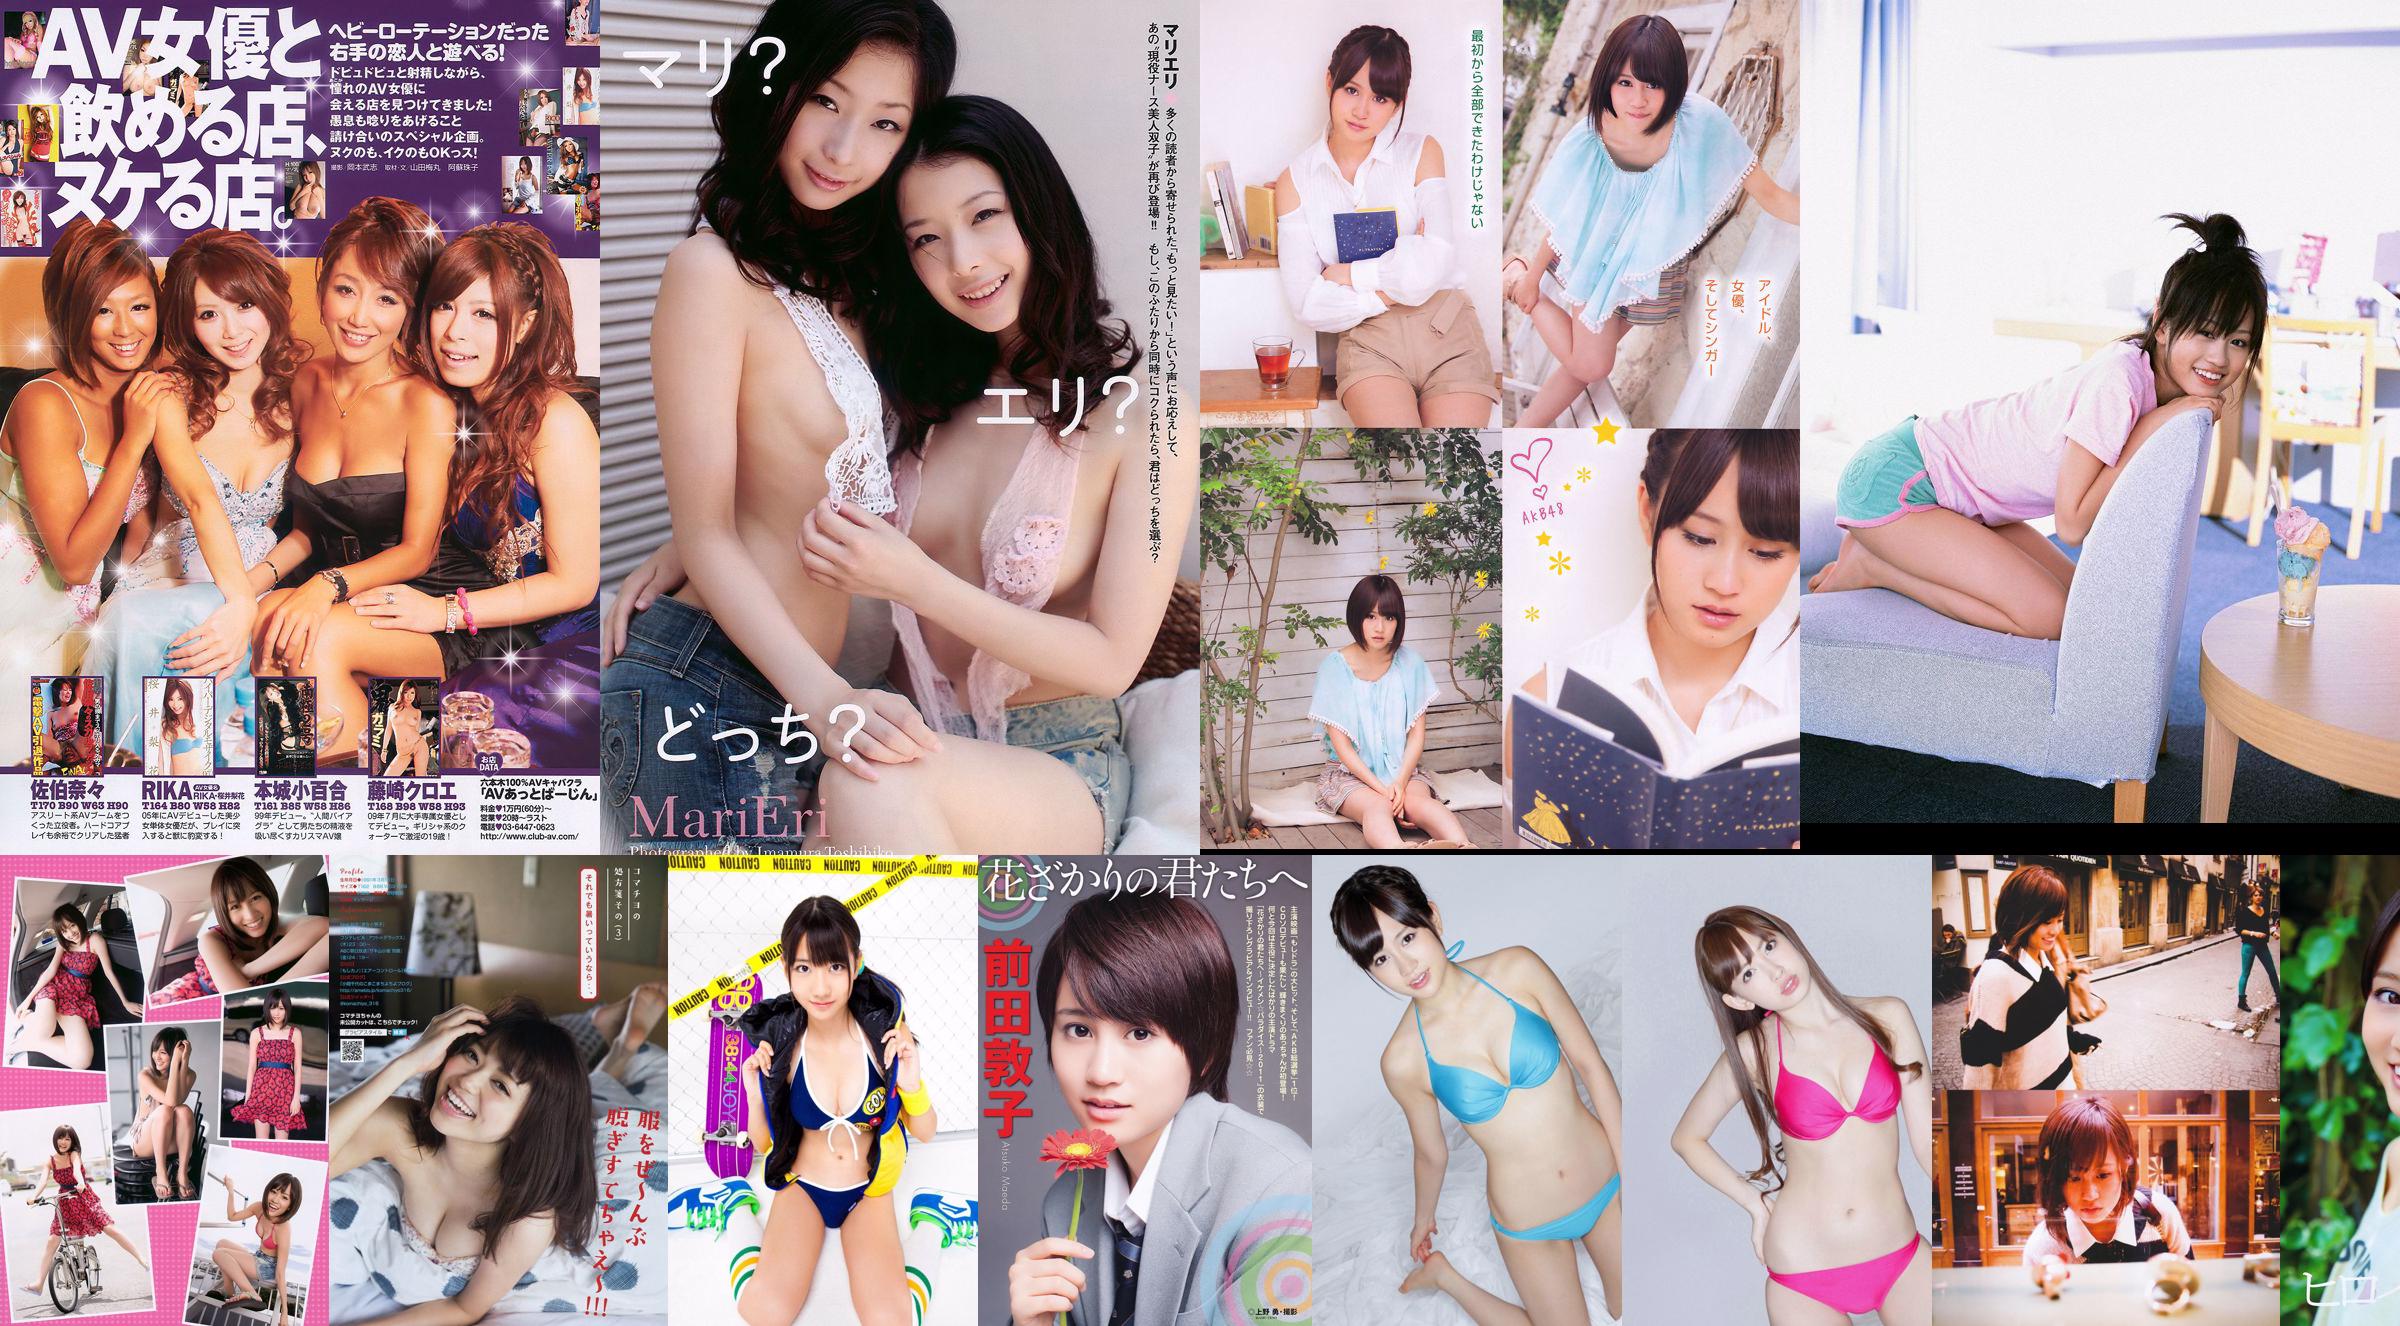 Atsuko Maeda Momoiro Clover Z [Weekly Young Jump] 2012 nr 30 Photo Magazine No.6a66ba Strona 1